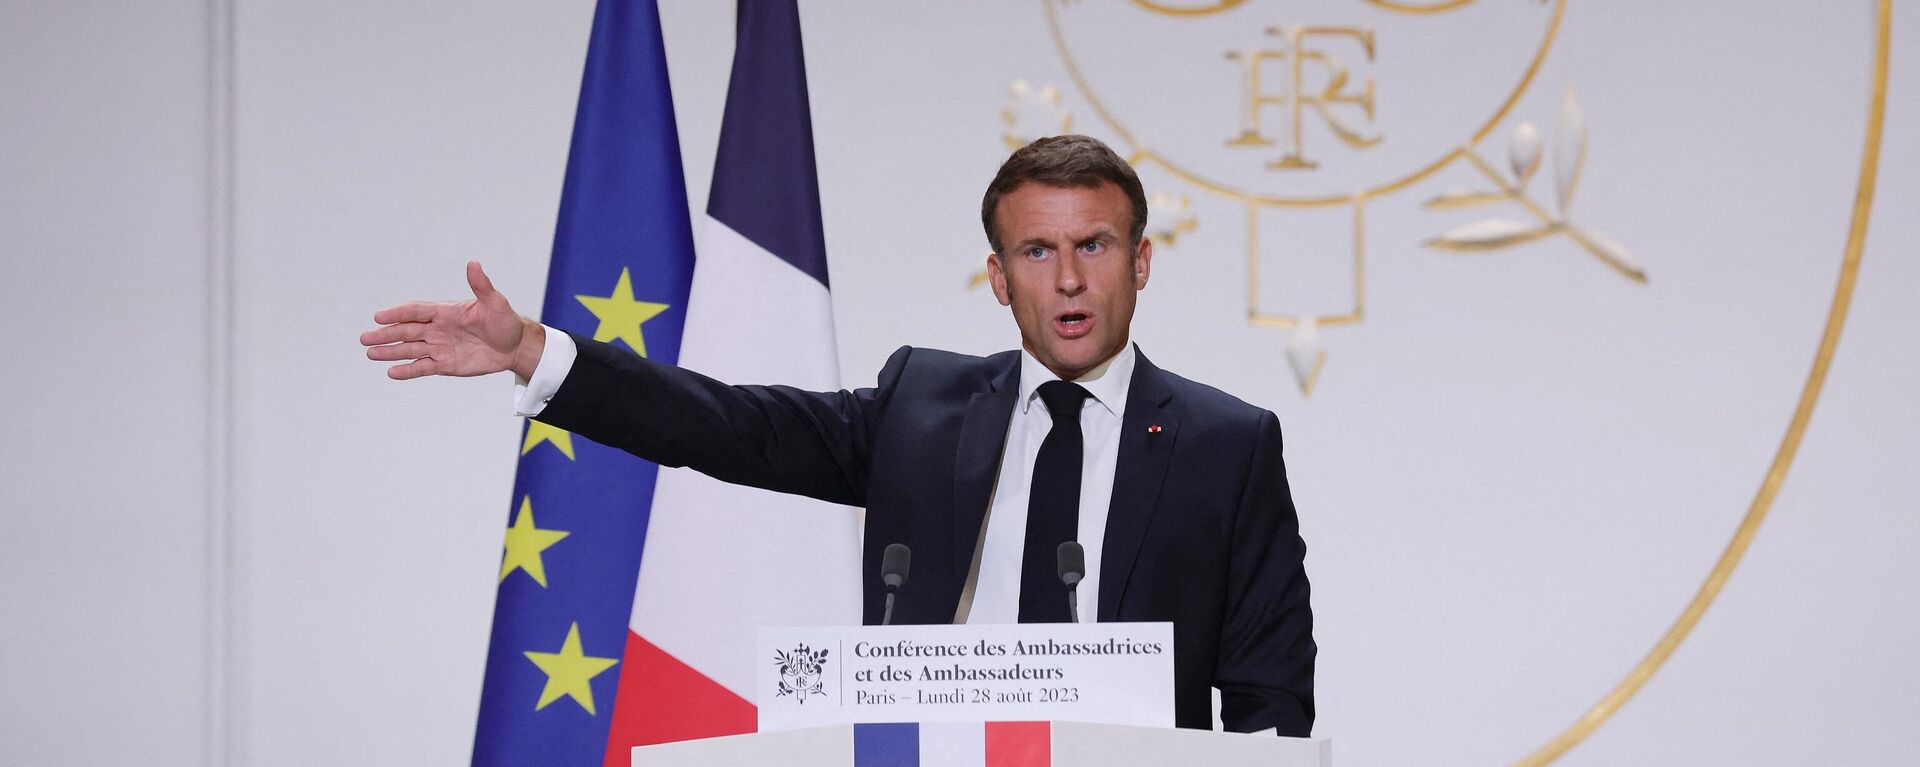 O presidente francês Emmanuel Macron dirige-se aos embaixadores franceses durante a conferência de embaixadores no Palácio do Eliseu, em Paris, em 28 de agosto de 2023 - Sputnik Brasil, 1920, 29.08.2023